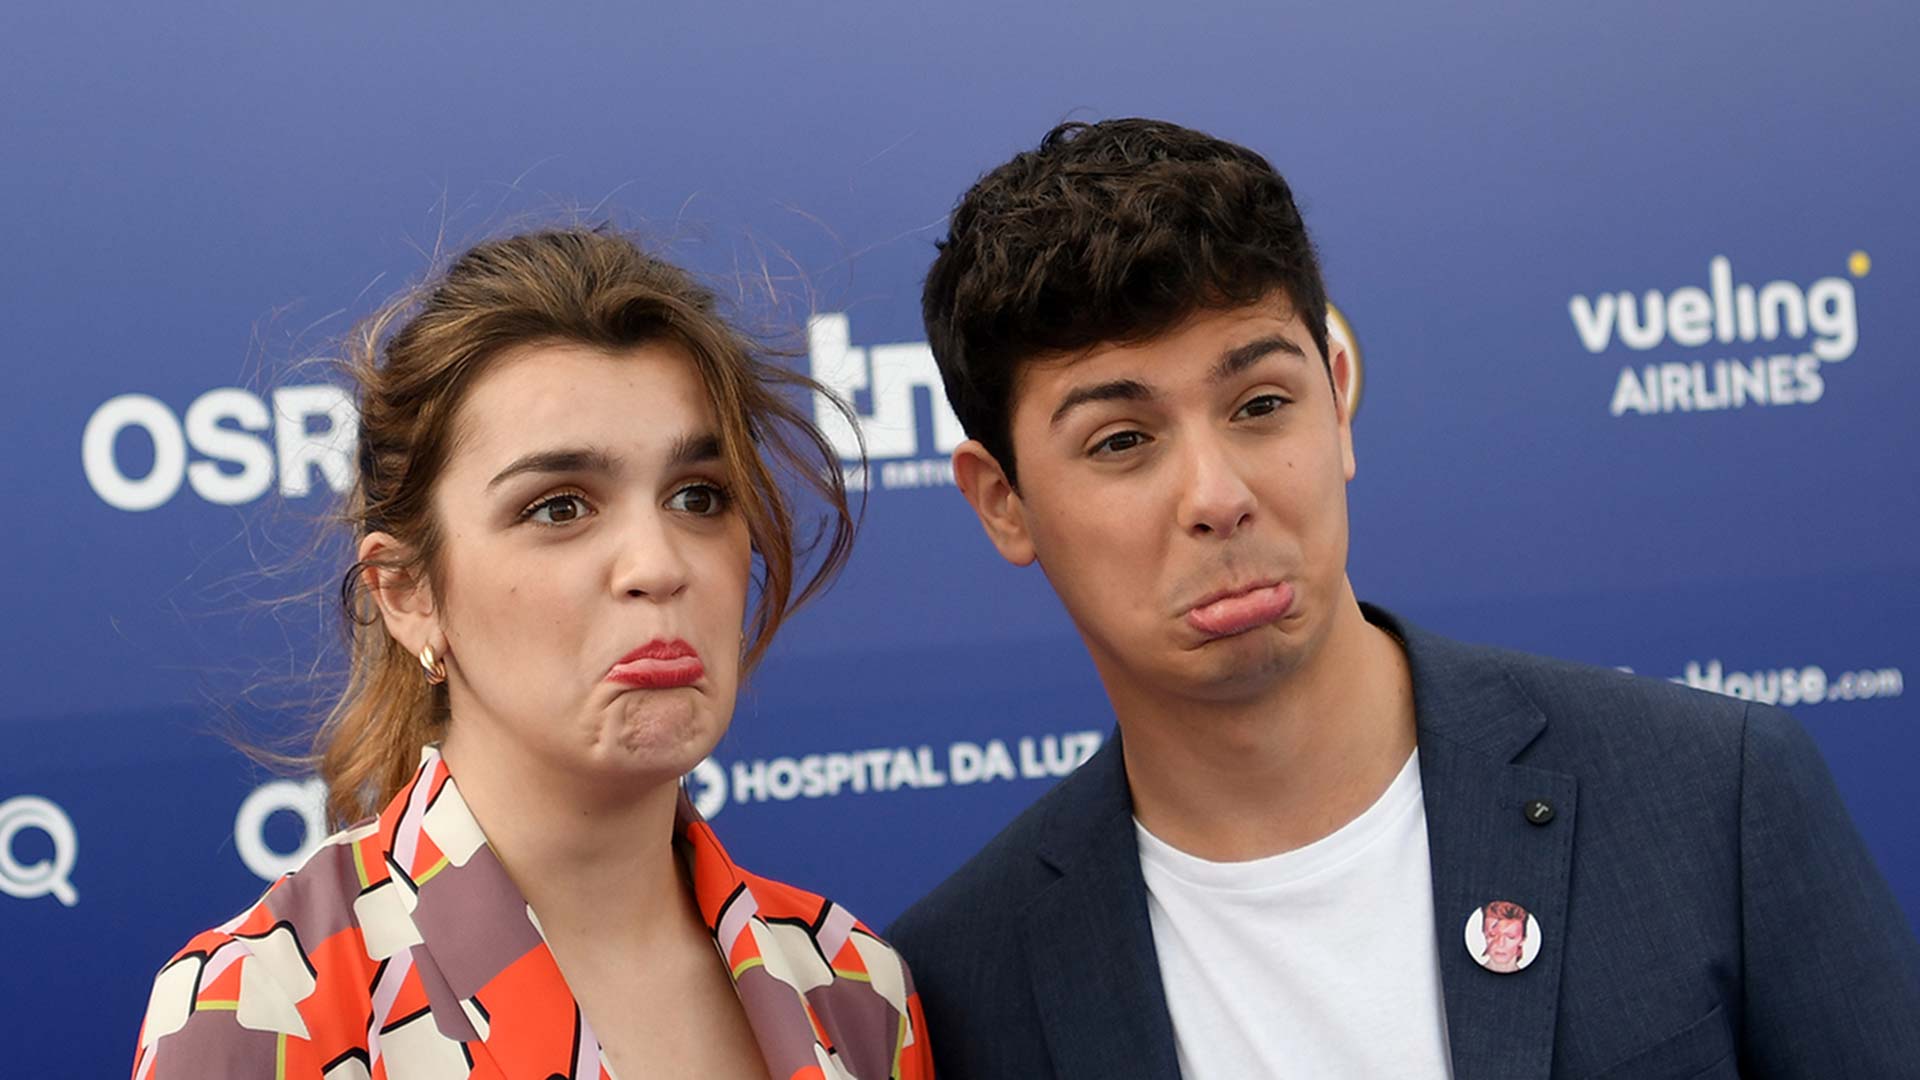 Alfred y Amaia, la pareja de Eurovisión que engancha en esta 'España de mierda'